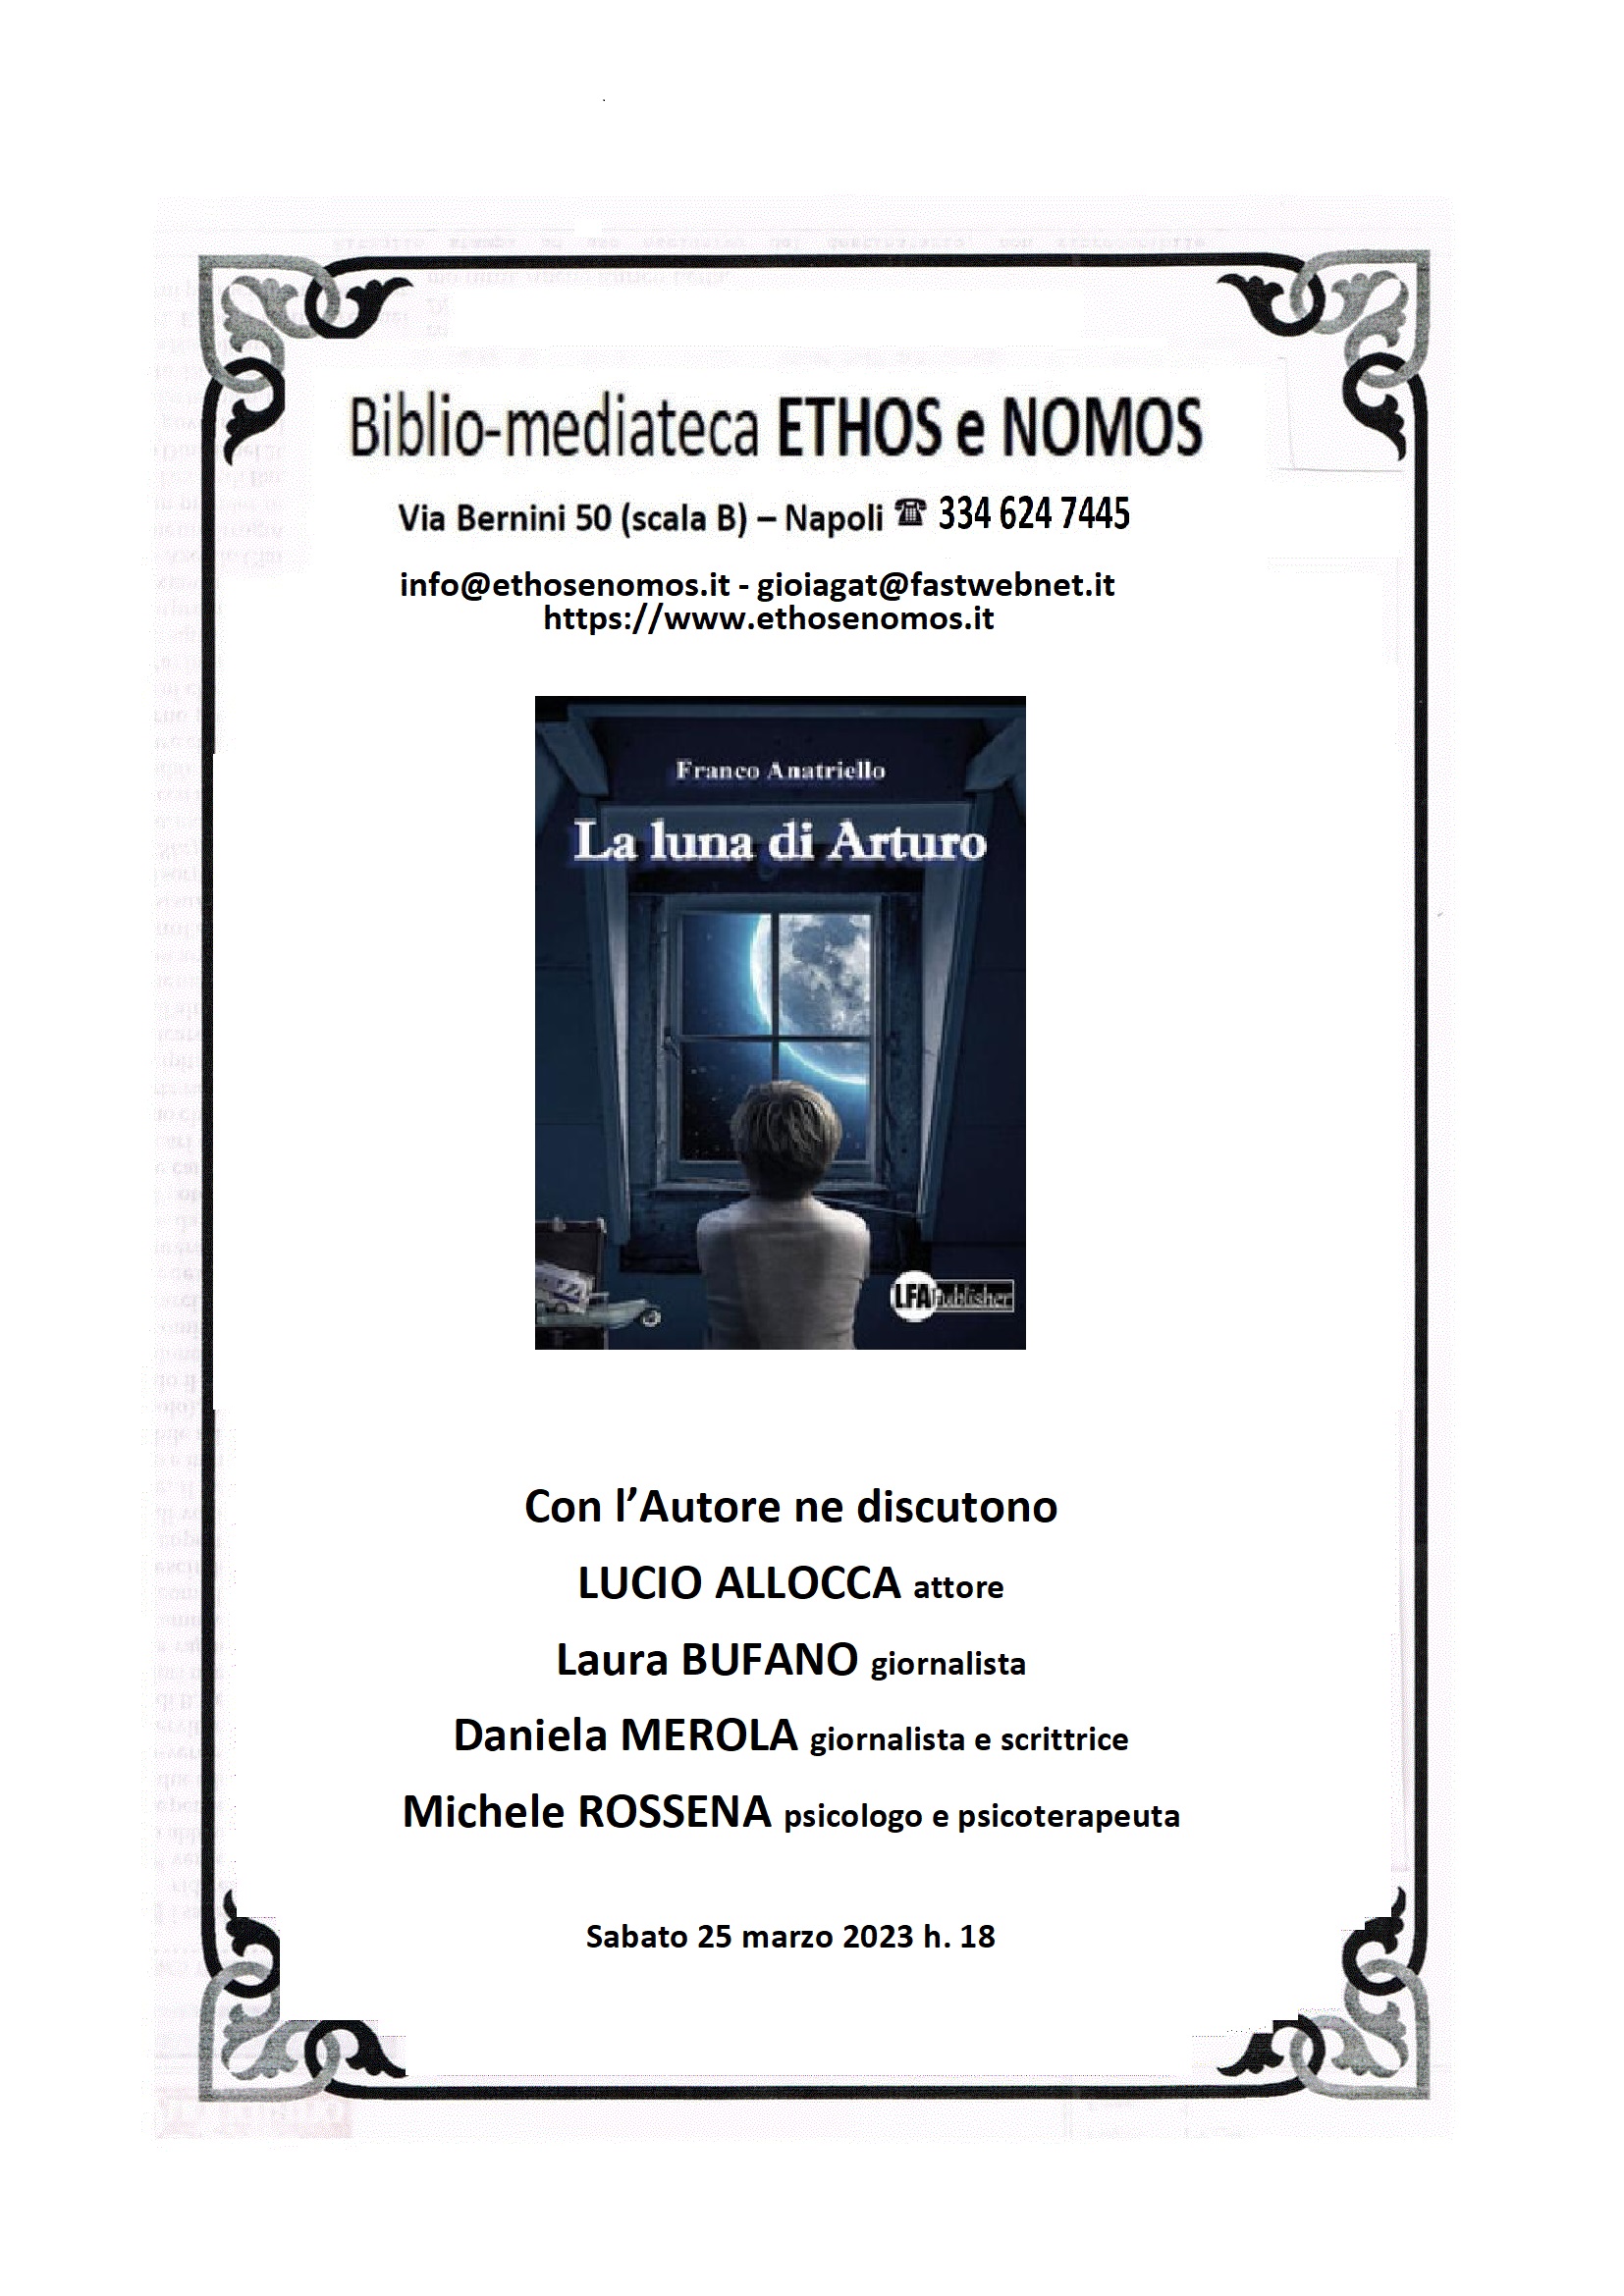 Franco ANATRIELLO - Presentazione del libro "La luna di Arturo"